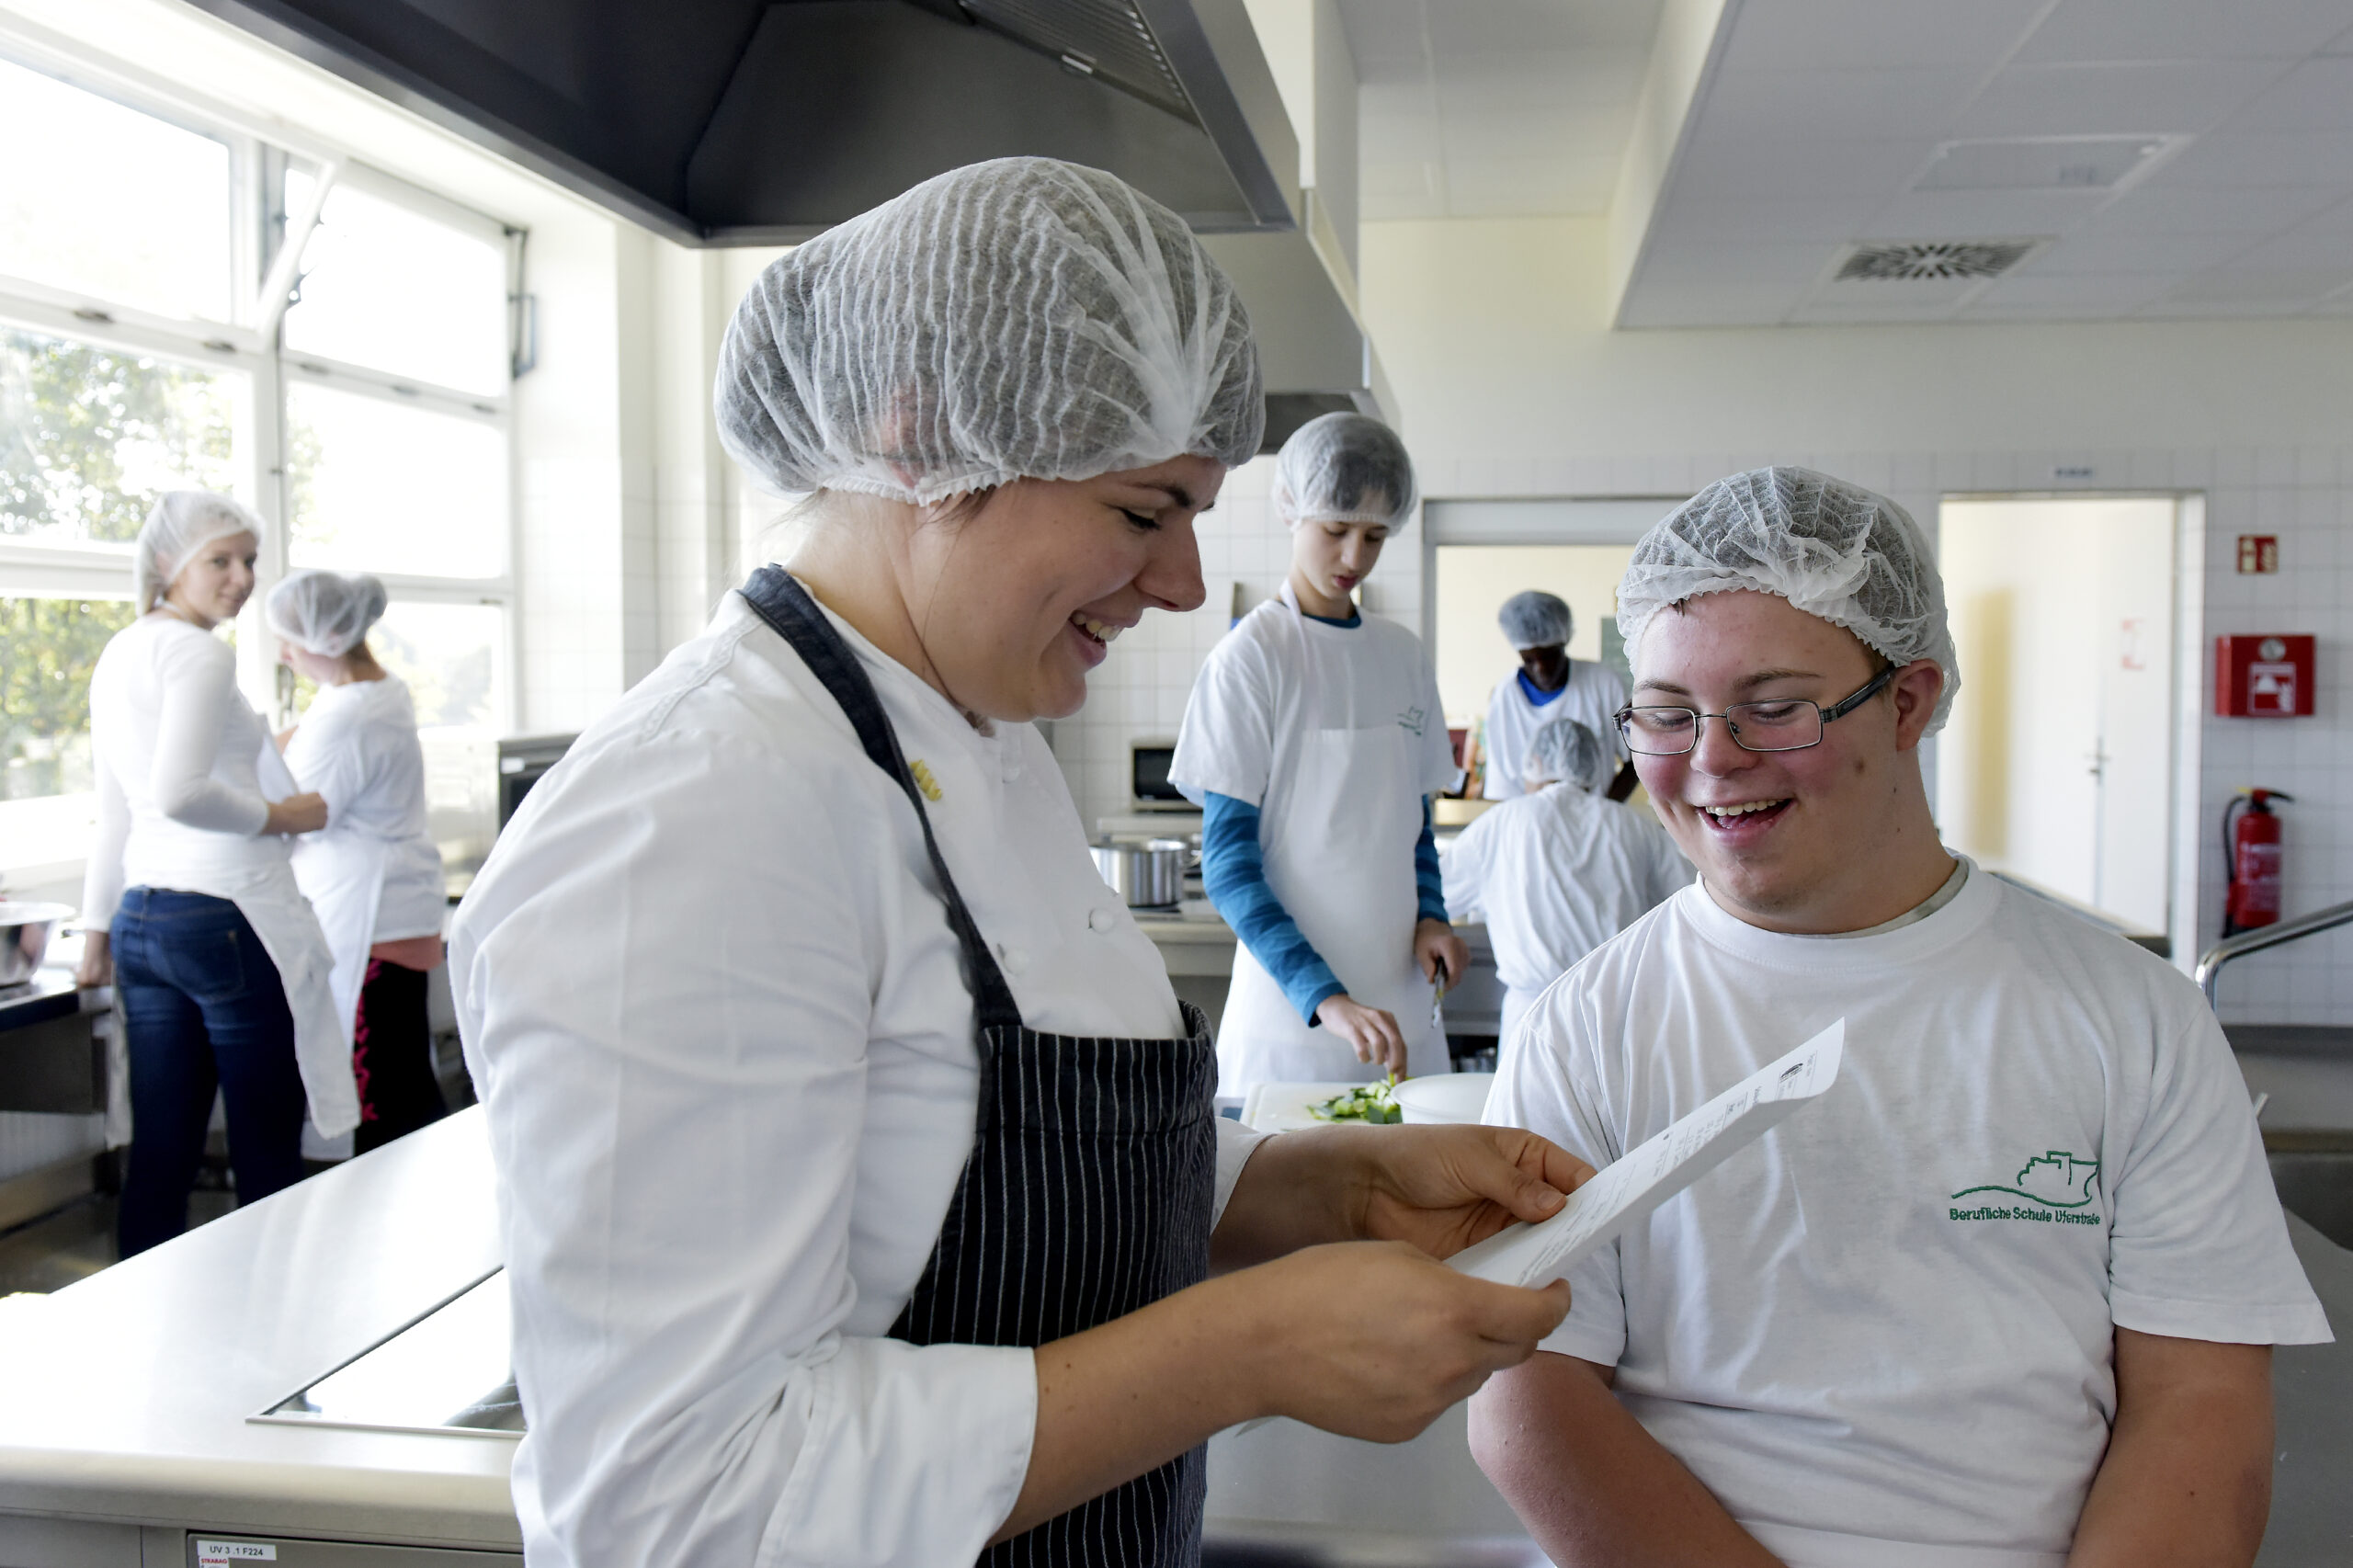 Das Foto zeigt eine Küche mit 5 jungen Menschen mit weißen Kochschürzen im Hintergrund. Im Vordergrund steht links eine junge Frau mit blauer Kochschürze und weißer Haarhaube, die einen Zettel in der Hand hält und einem jungen Mann mit Brille, der lachend auf diesen Zettel schaut.